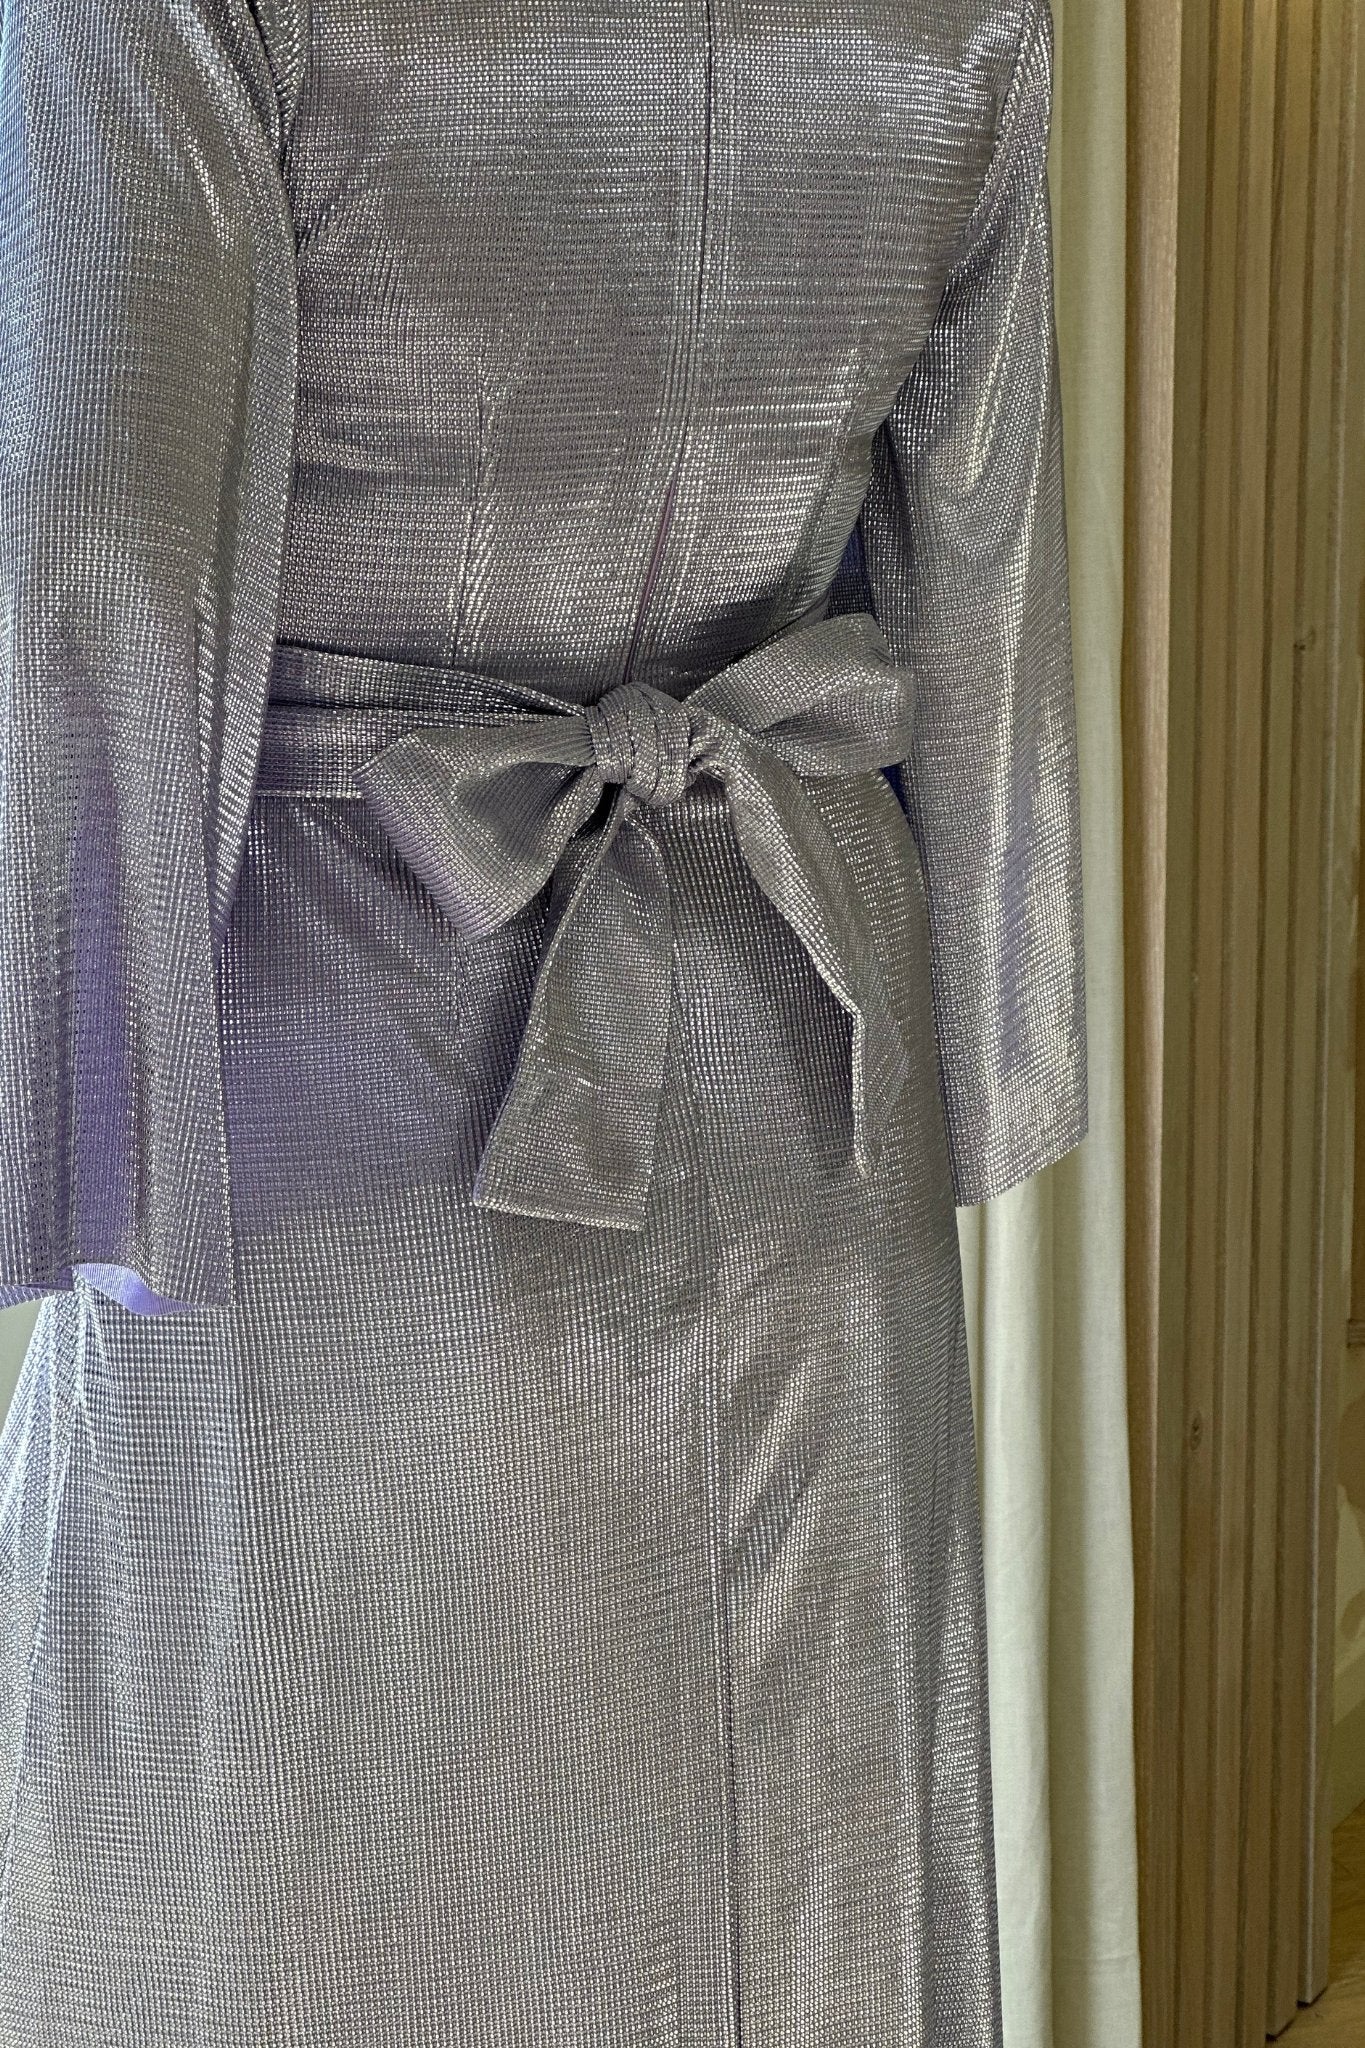 Alana Metallic Wrap Dress In Lilac - The Walk in Wardrobe